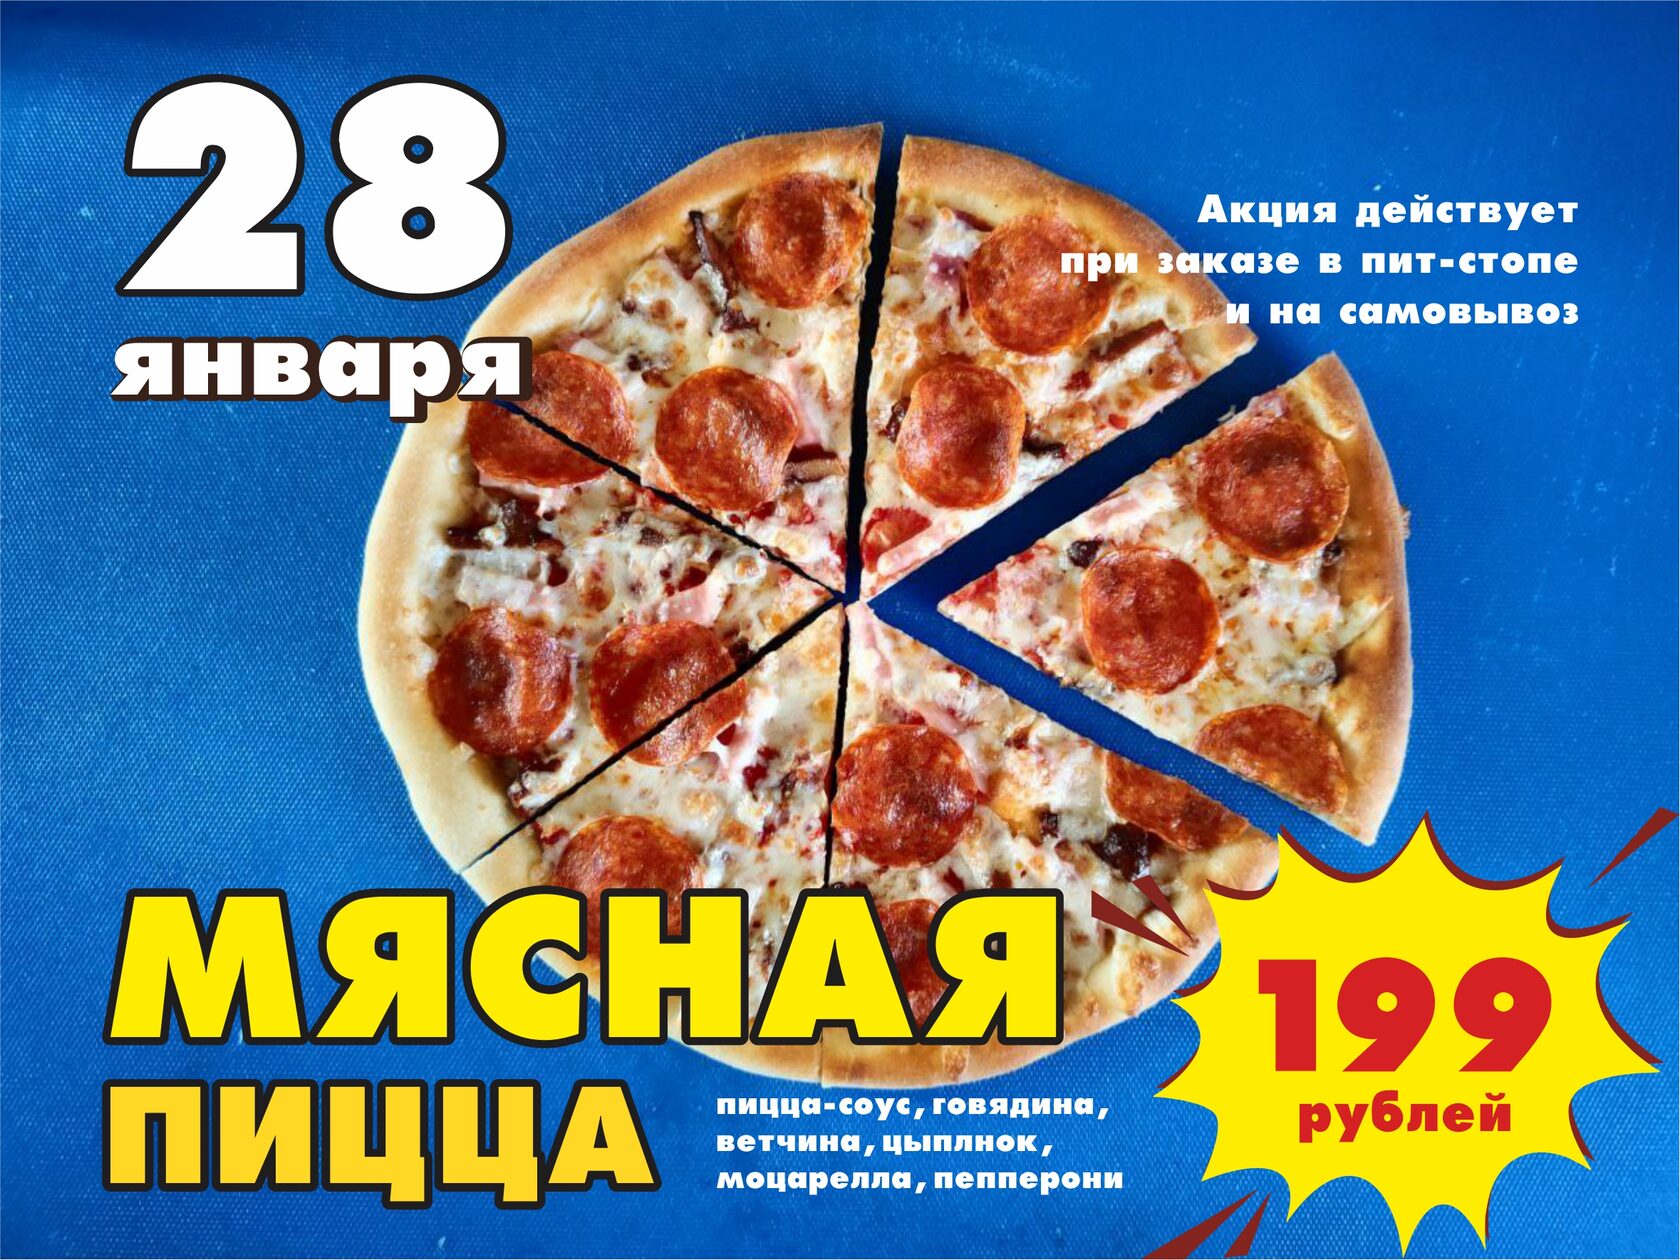 Рекламные объявления люблю пицца. Пицца я люблю пиццу. Пицца ПДД. Быхов соседи пицца. Понравилась пицца